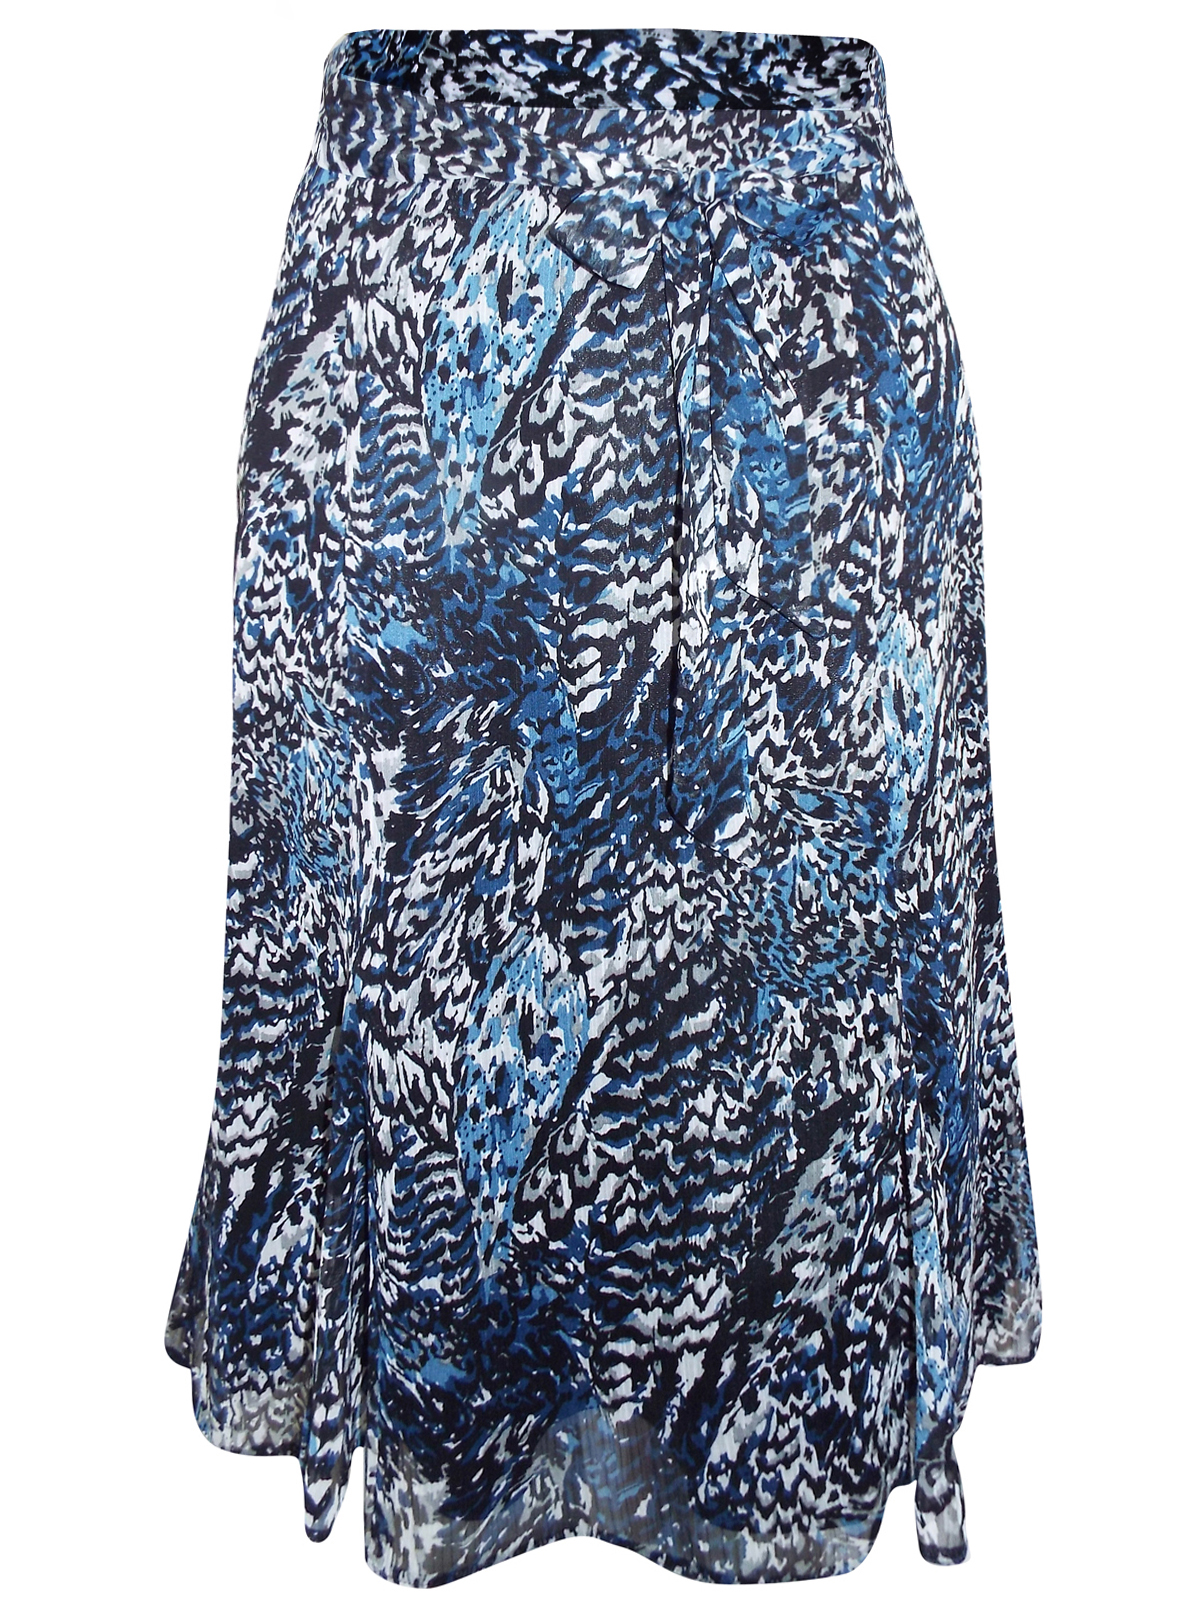 Karida - - Karida BLUE Crinkle Chiffon Belted Skirt - Plus Size 12 to 26